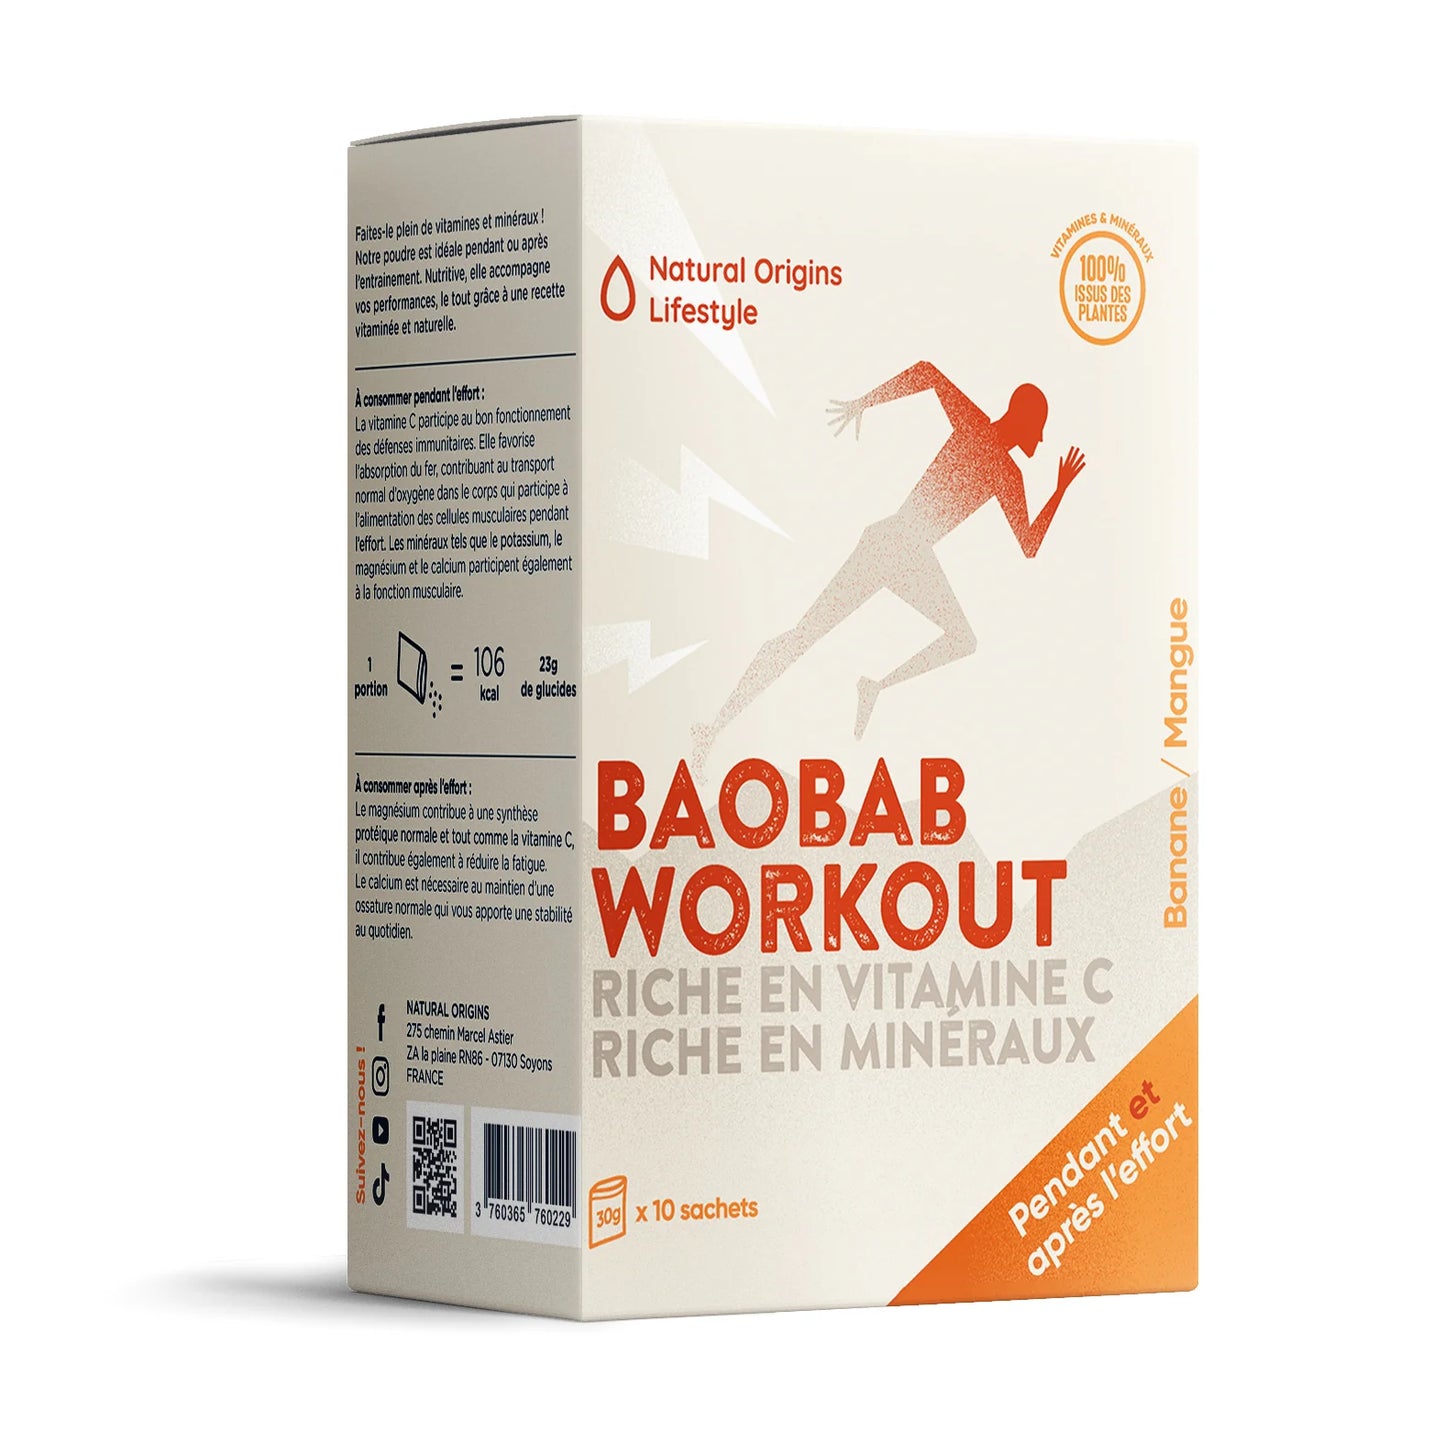 Baobab Workout - Natural Origins